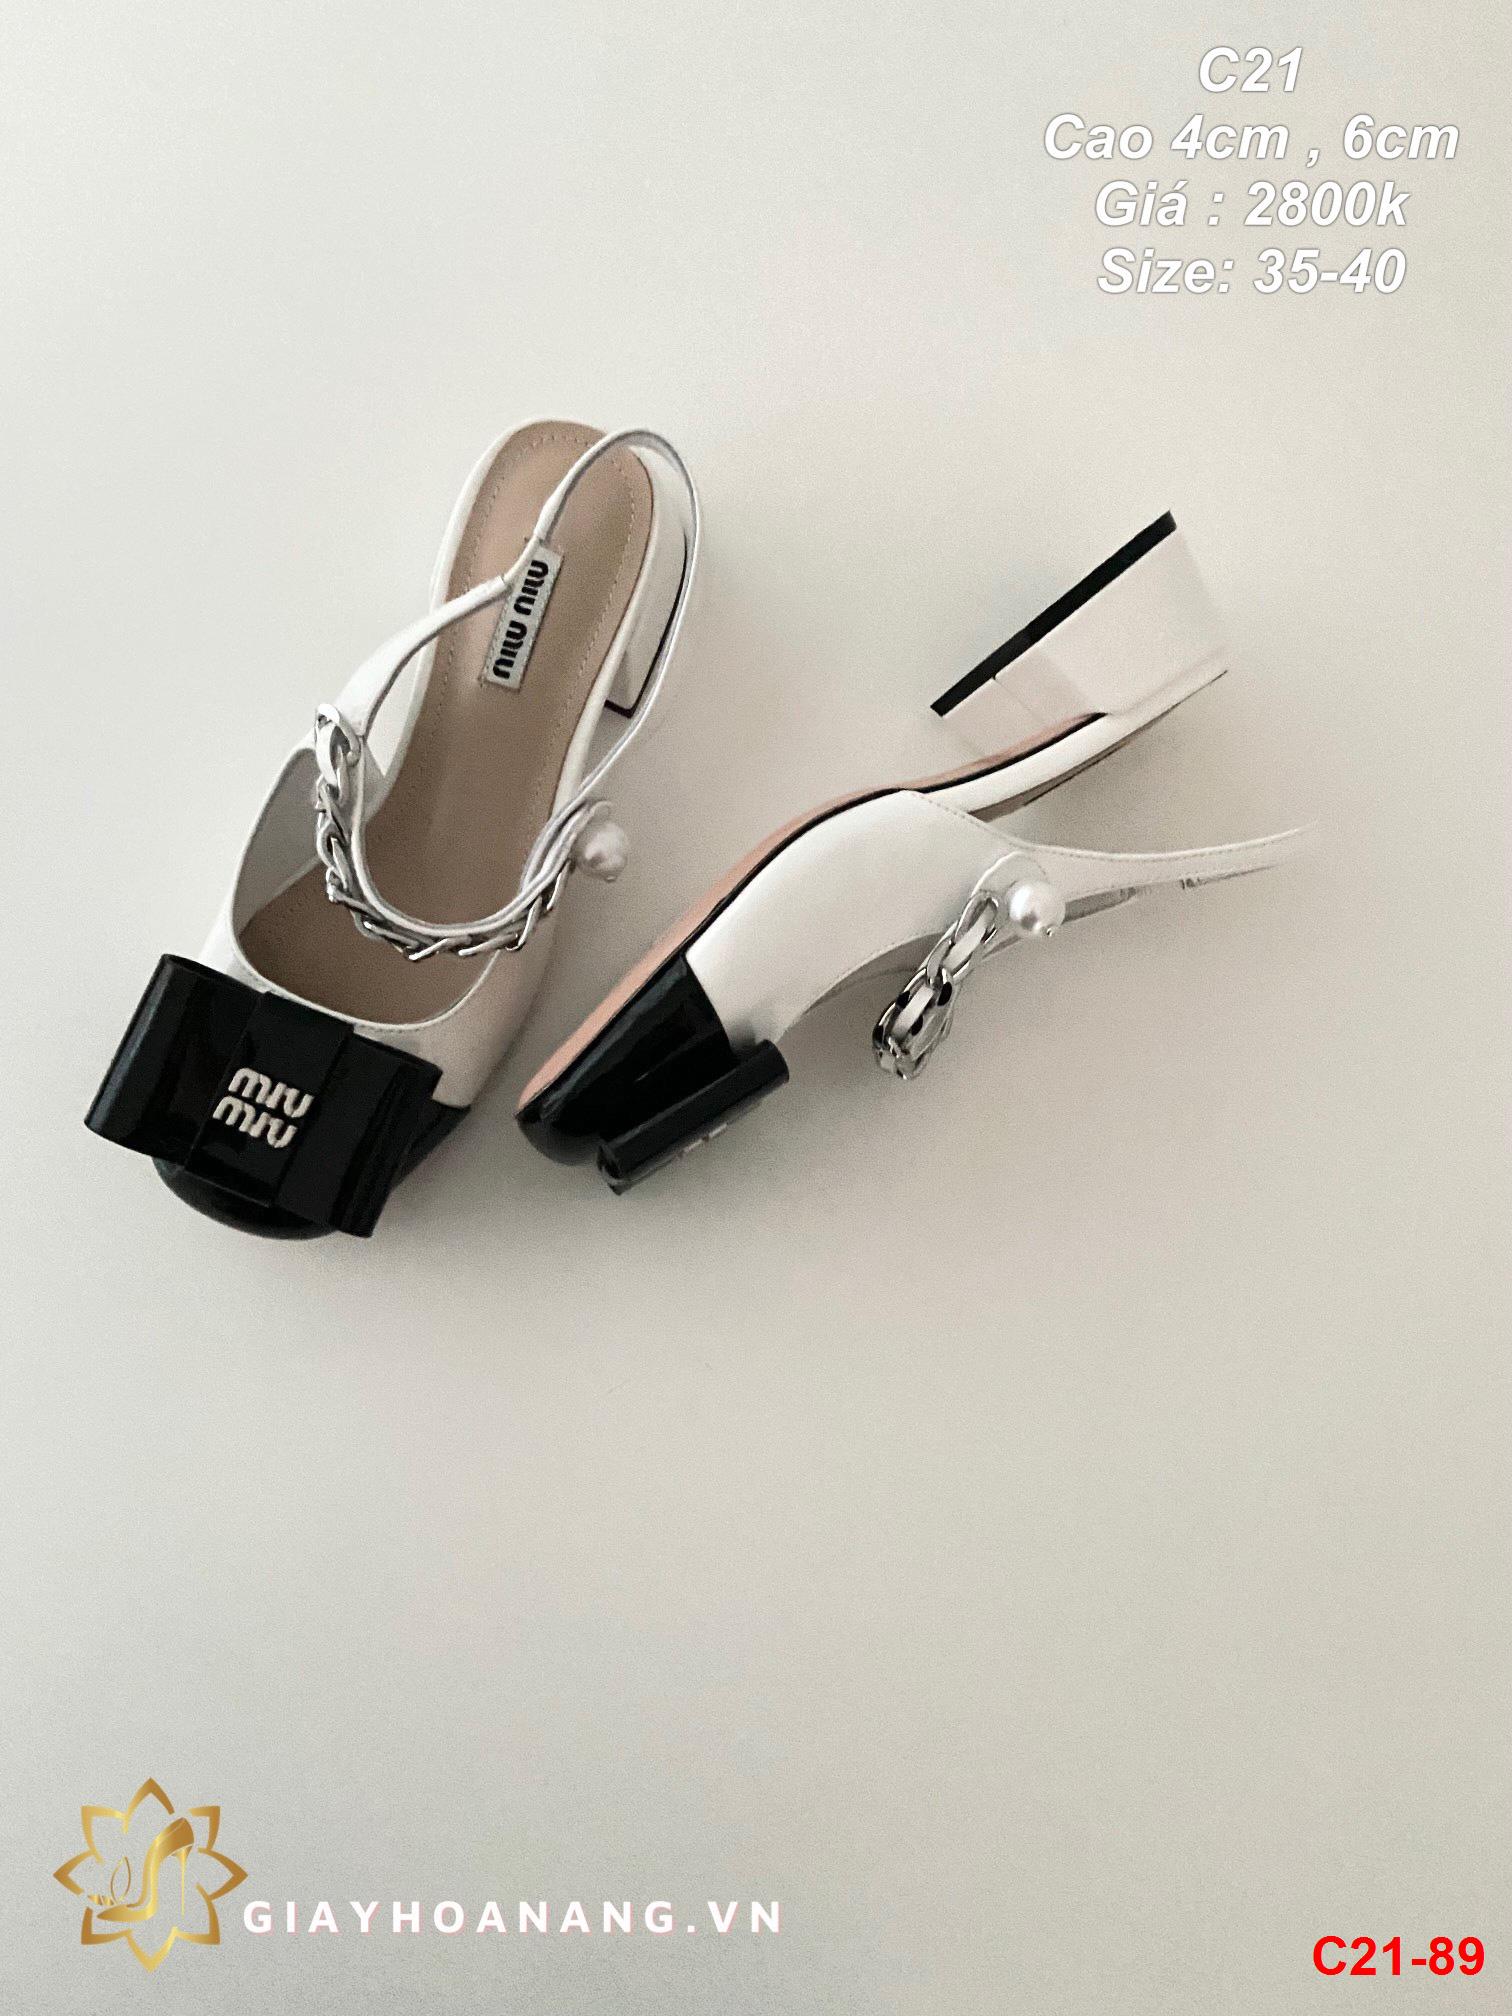 C21-89 Miu Miu sandal cao 4cm , 6cm siêu cấp